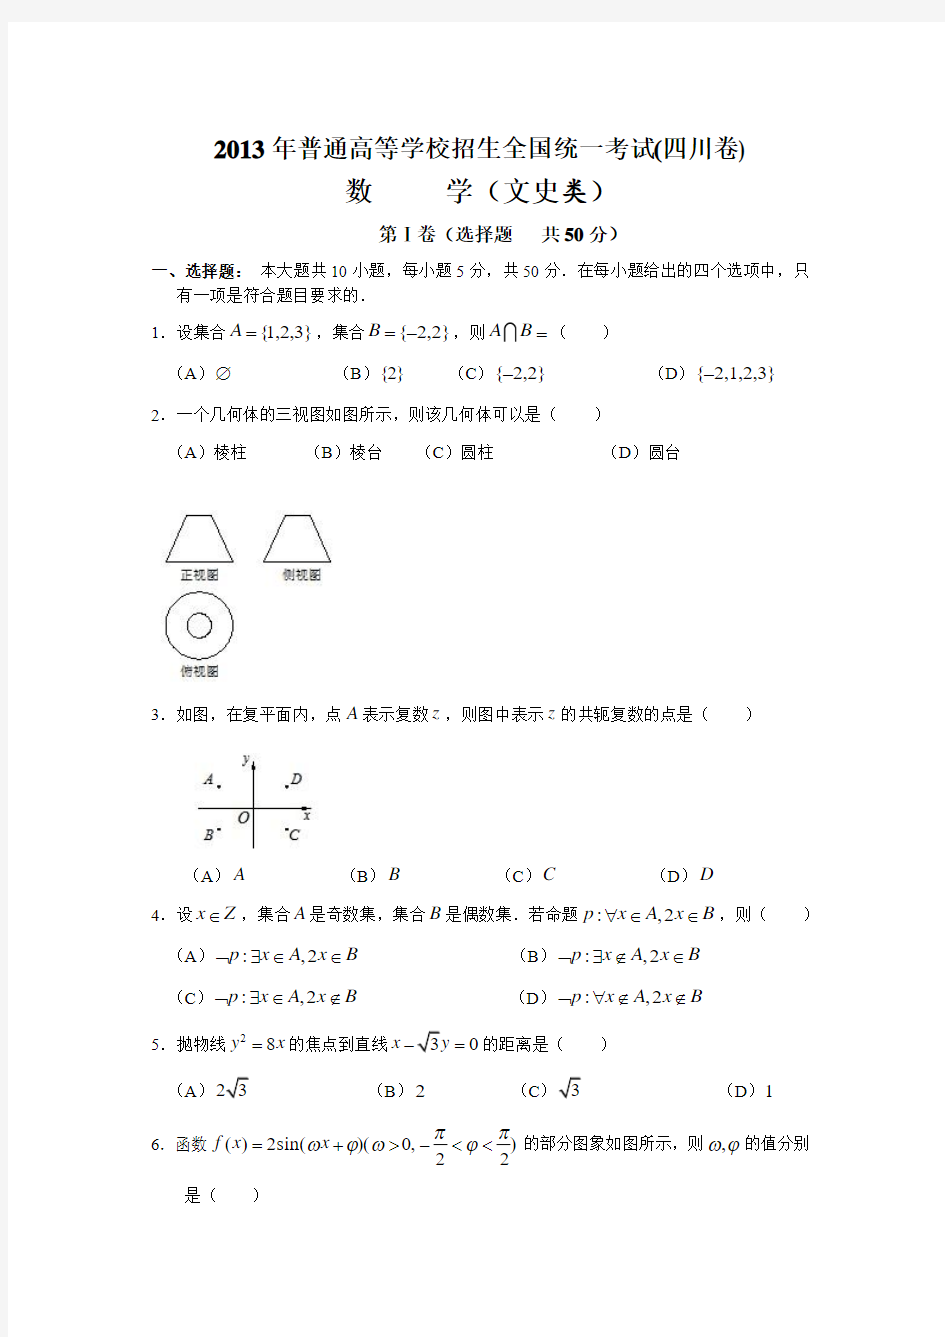 2013年高考文科数学试卷--四川卷(含答案)